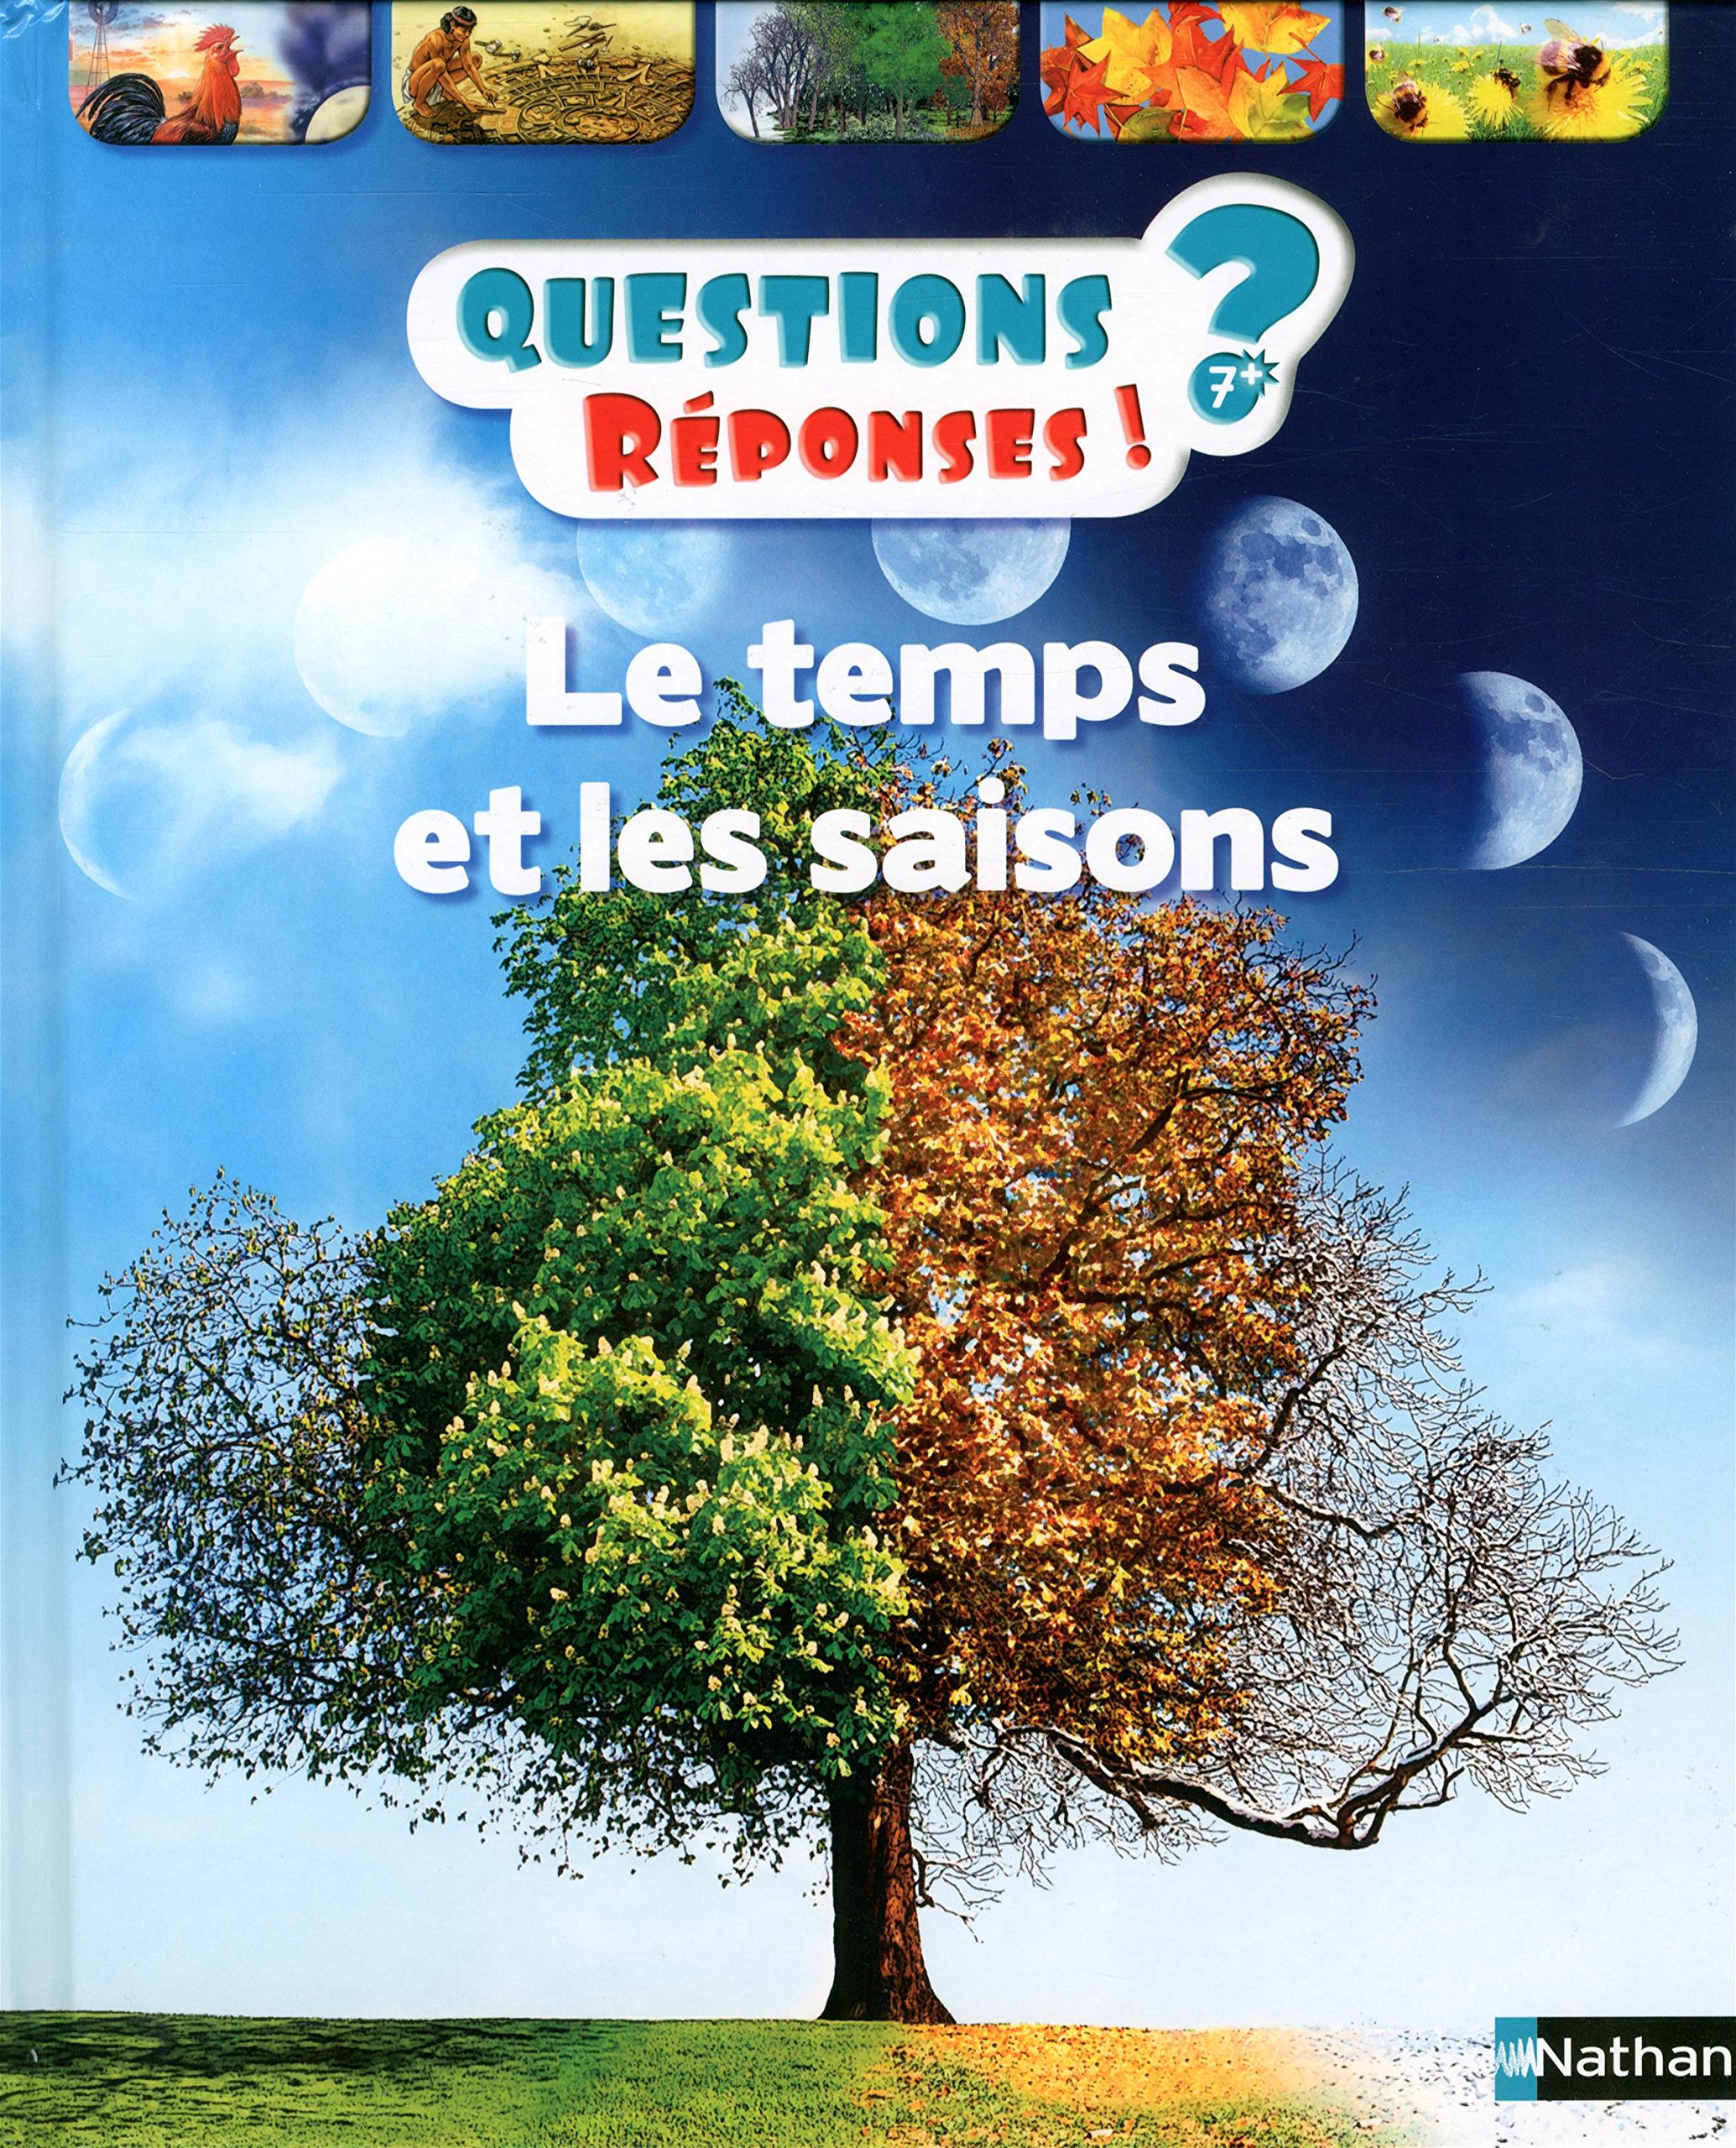 Questions Réponses!?-7+- Le temps et les saisons